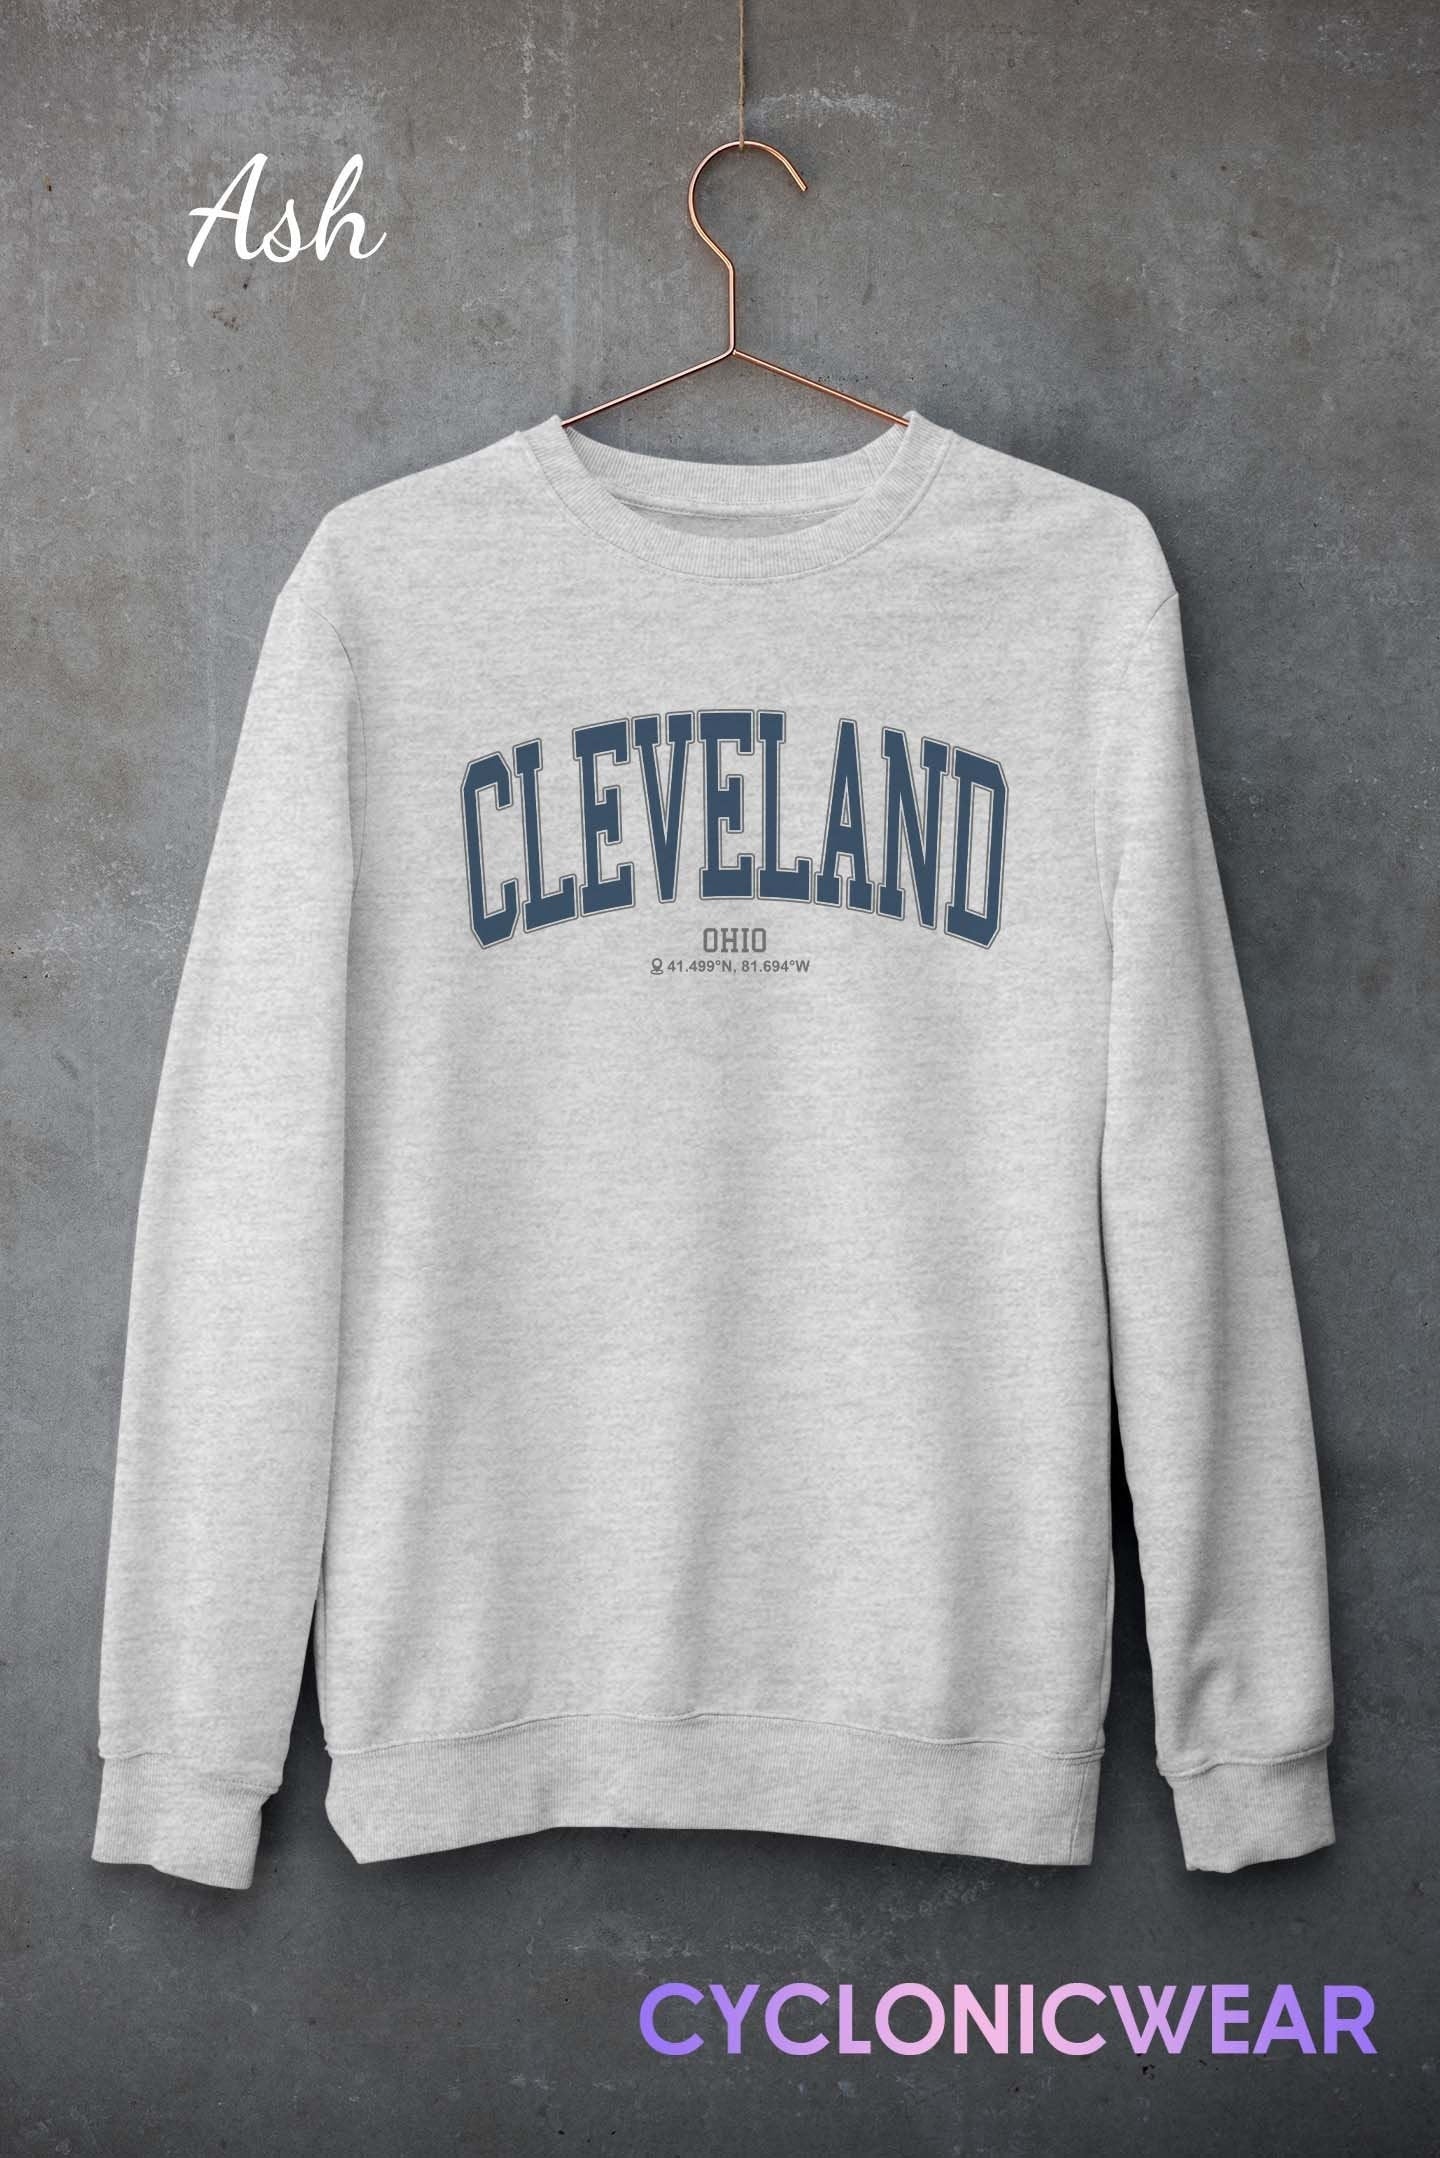 Cleveland Ohio College Crewneck Sweatshirt, OhioVintage Style Retro Sweater, Cleveland Ohio Gift